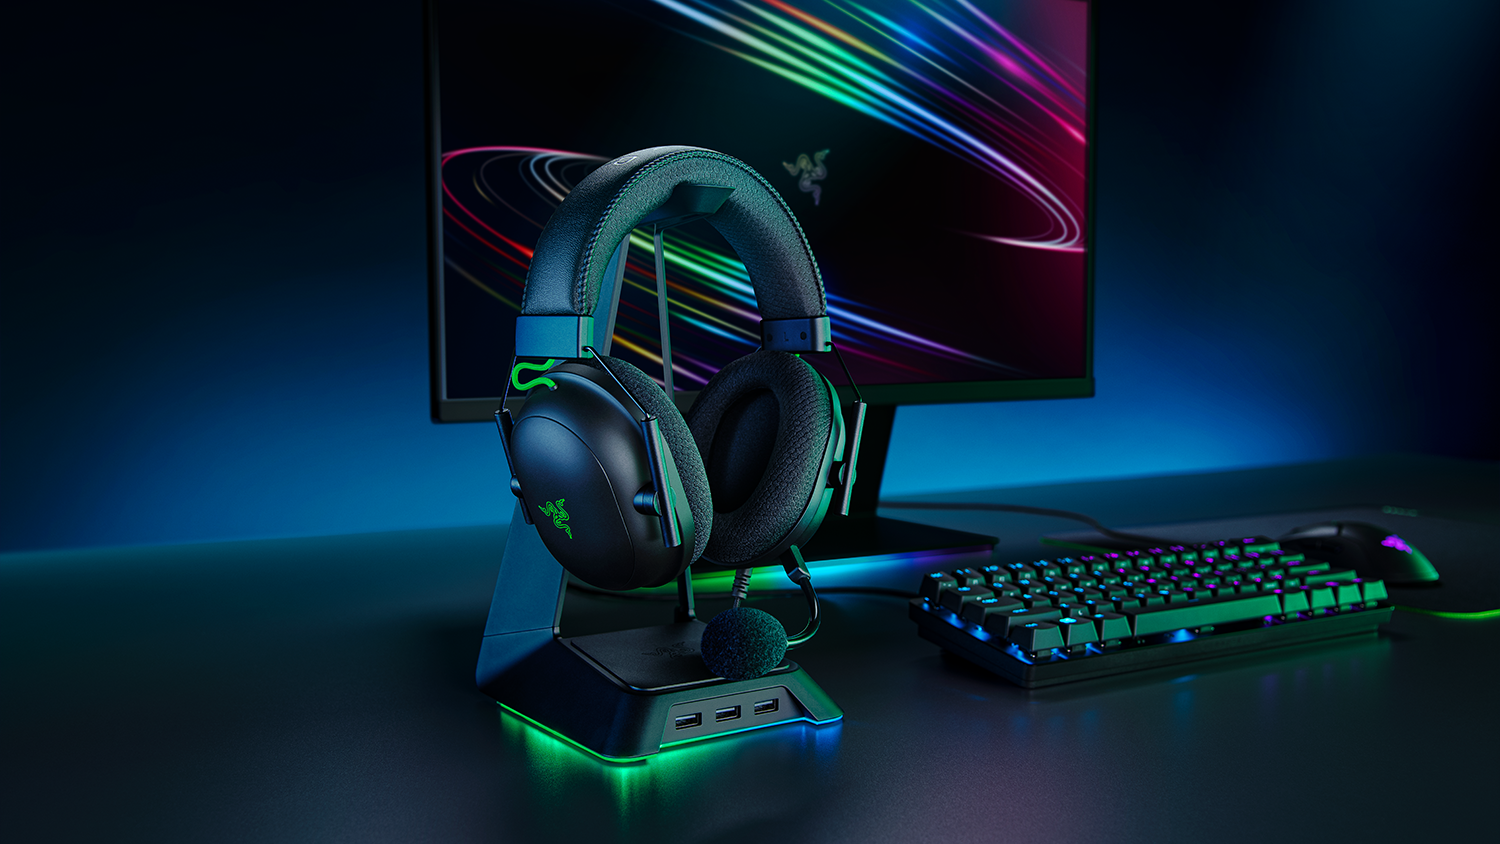 Razer's new Kraken gaming headsets bring controller-like